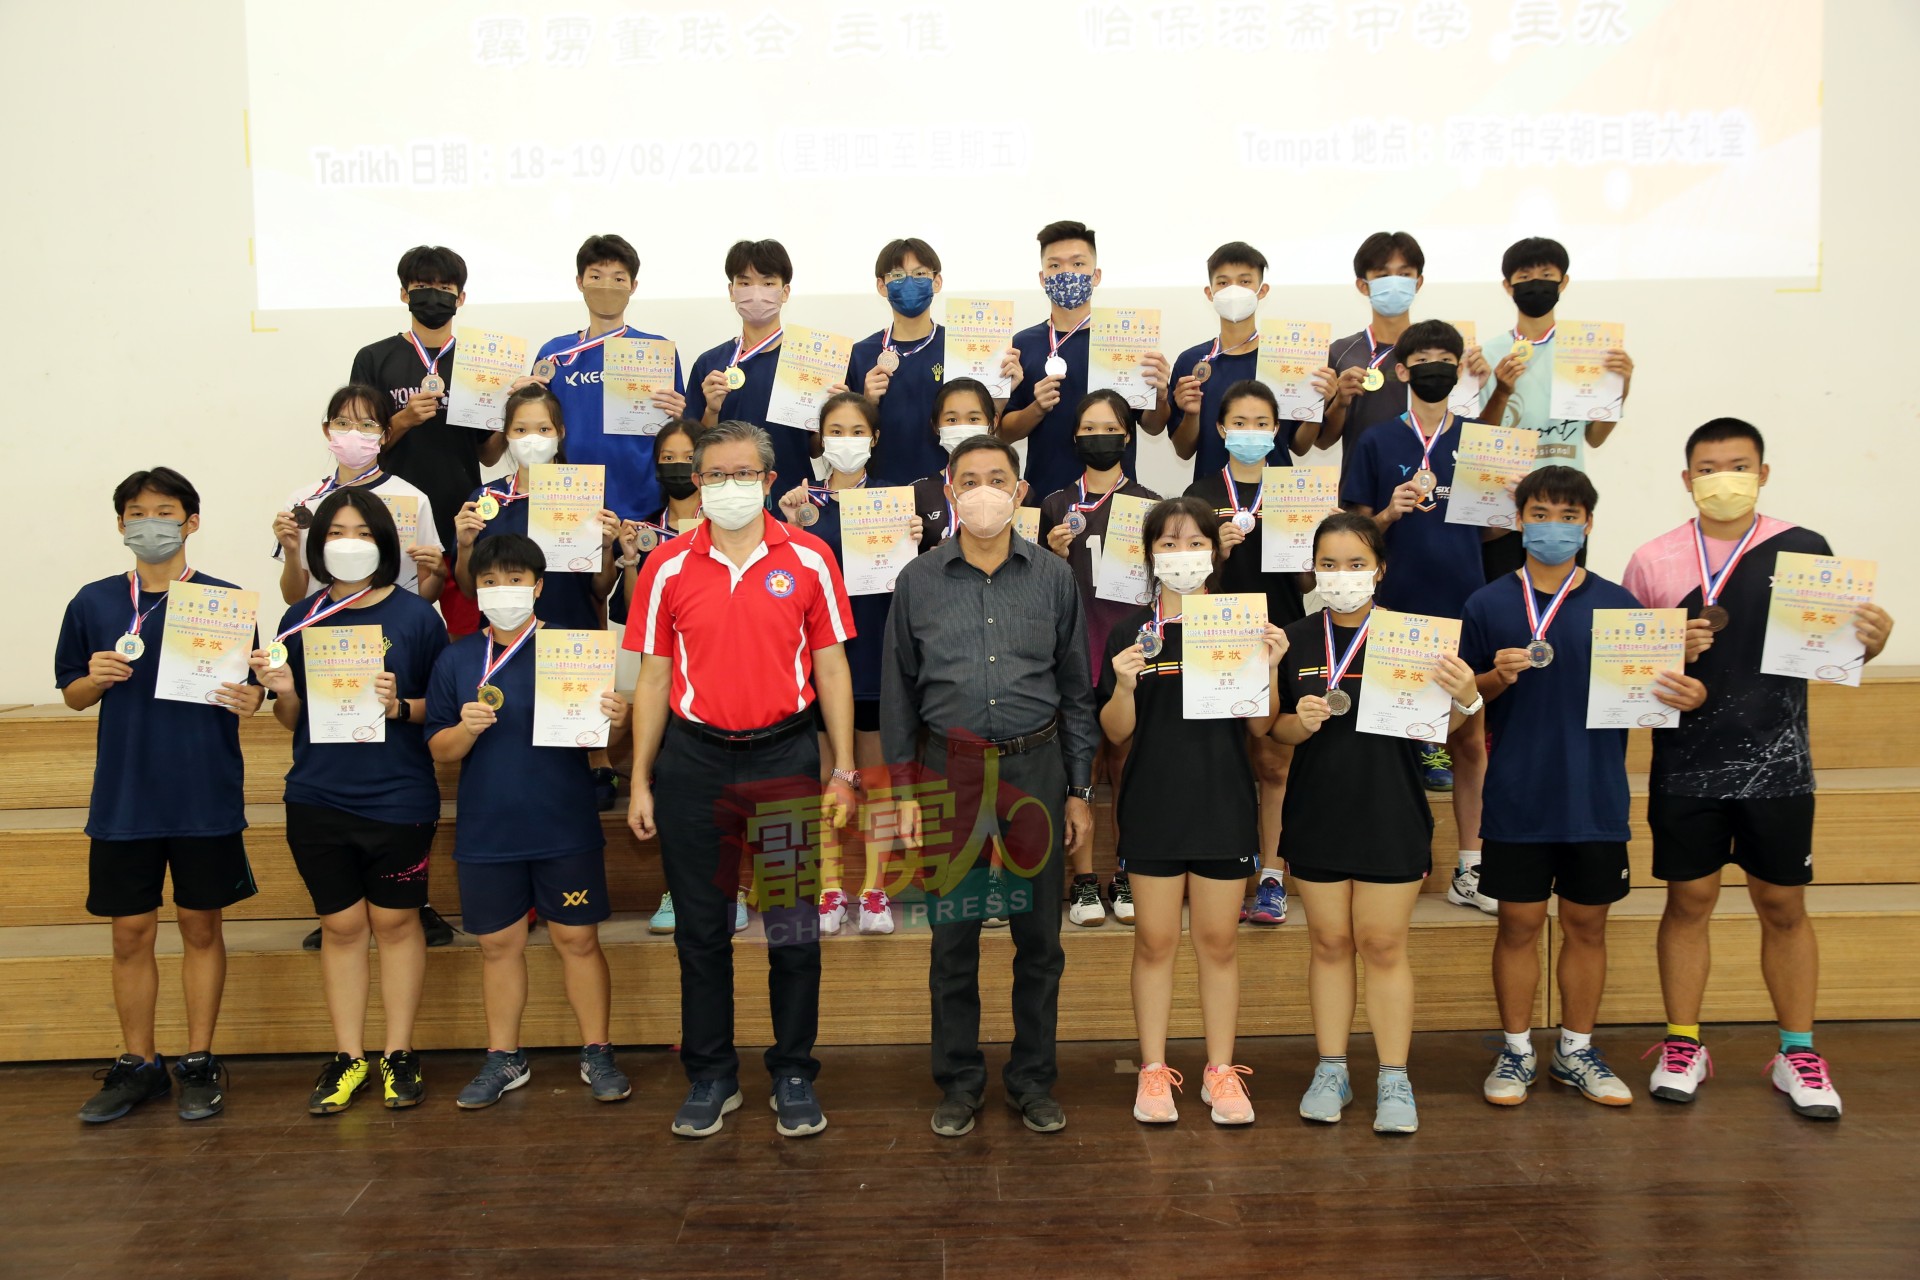 胡旺强（左6起）与谢符财于颁奖仪式上，与18岁以下各组得奖者合影。